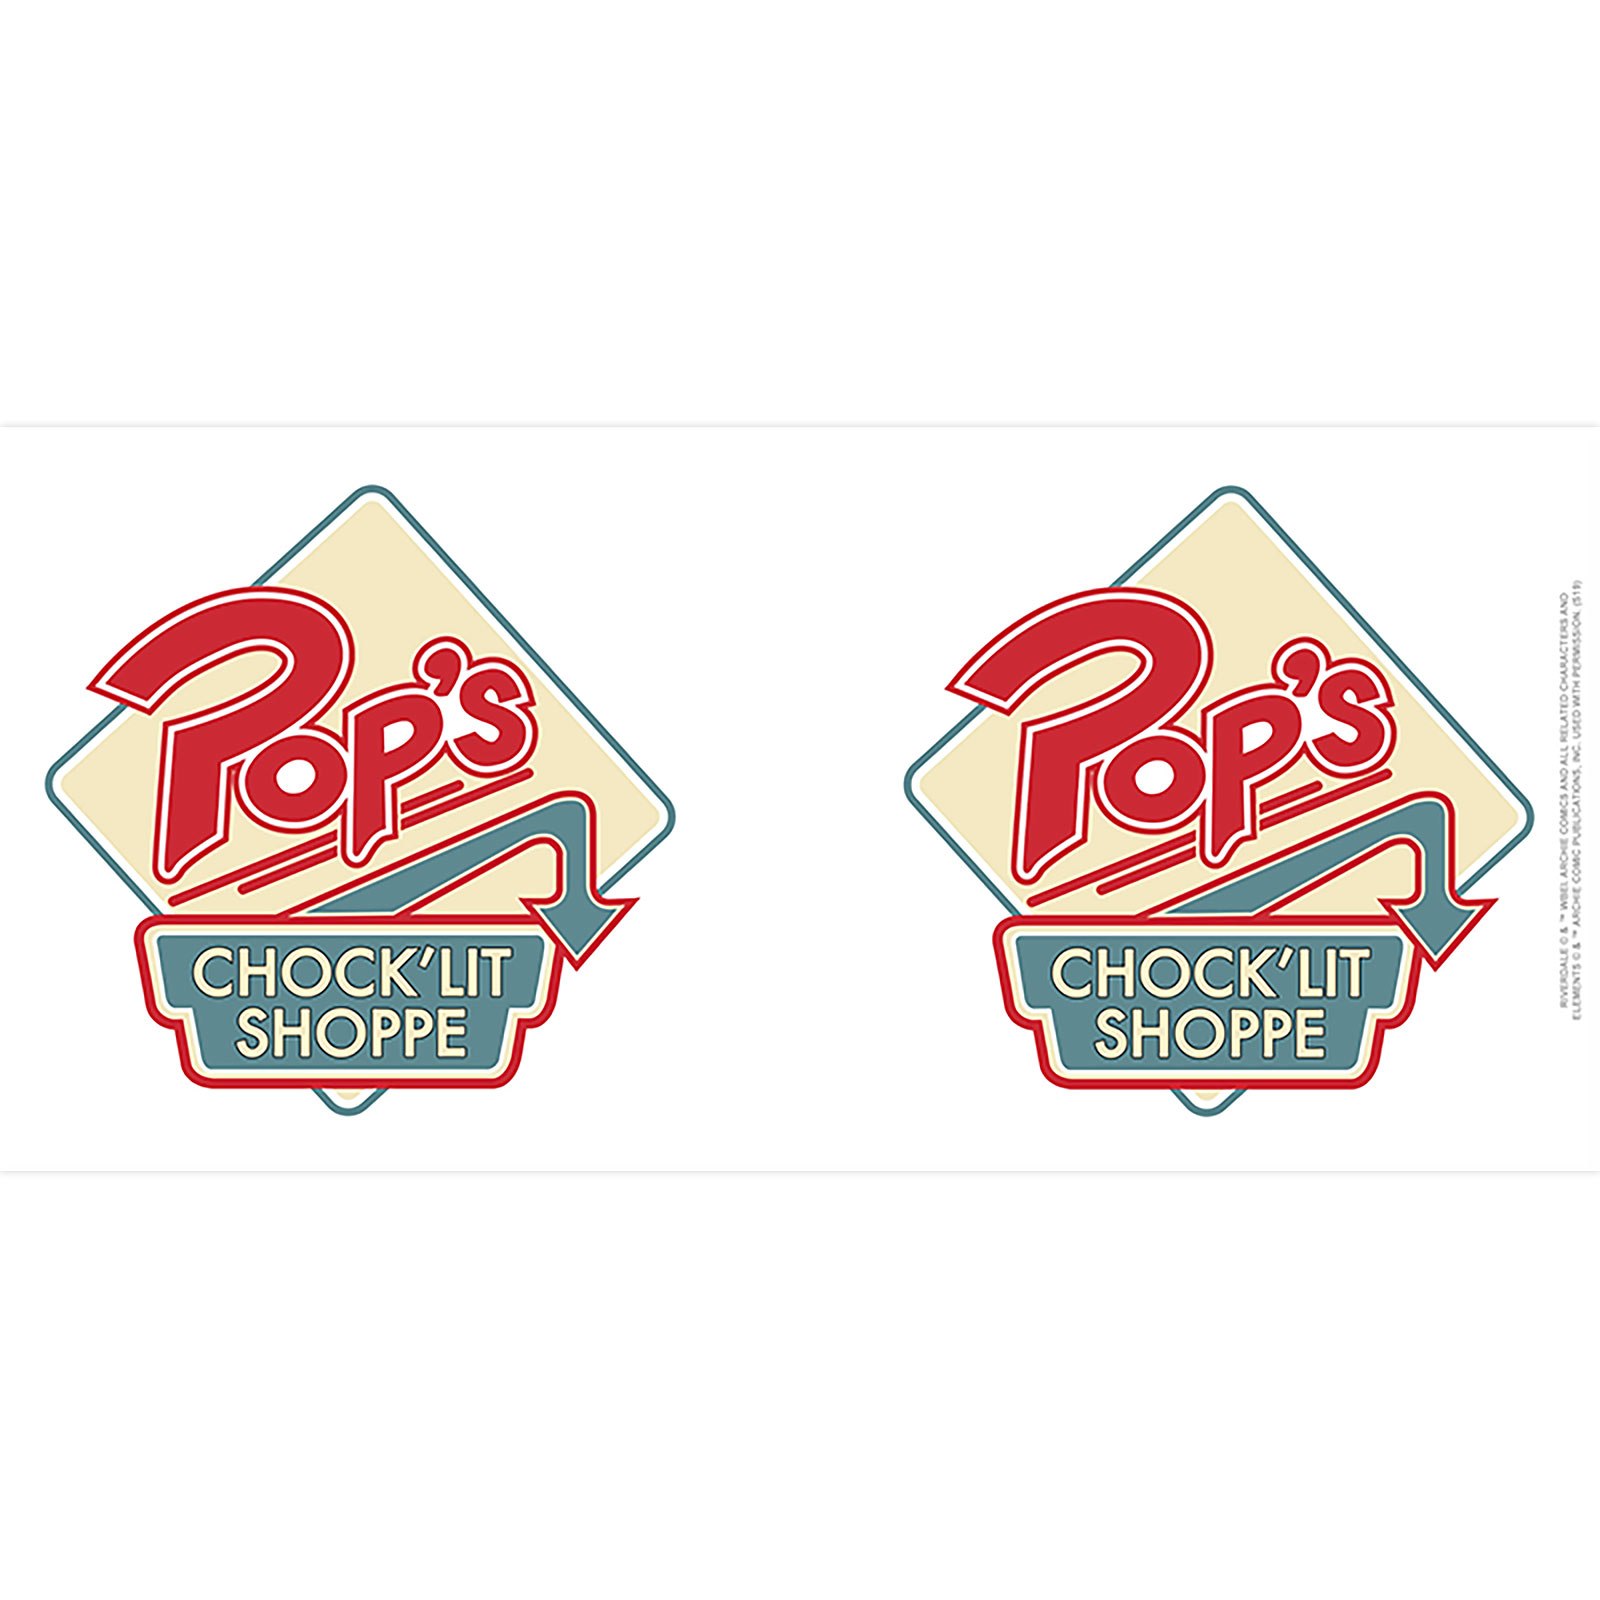 Riverdale - Pop's Chock'lit Shoppe Mok